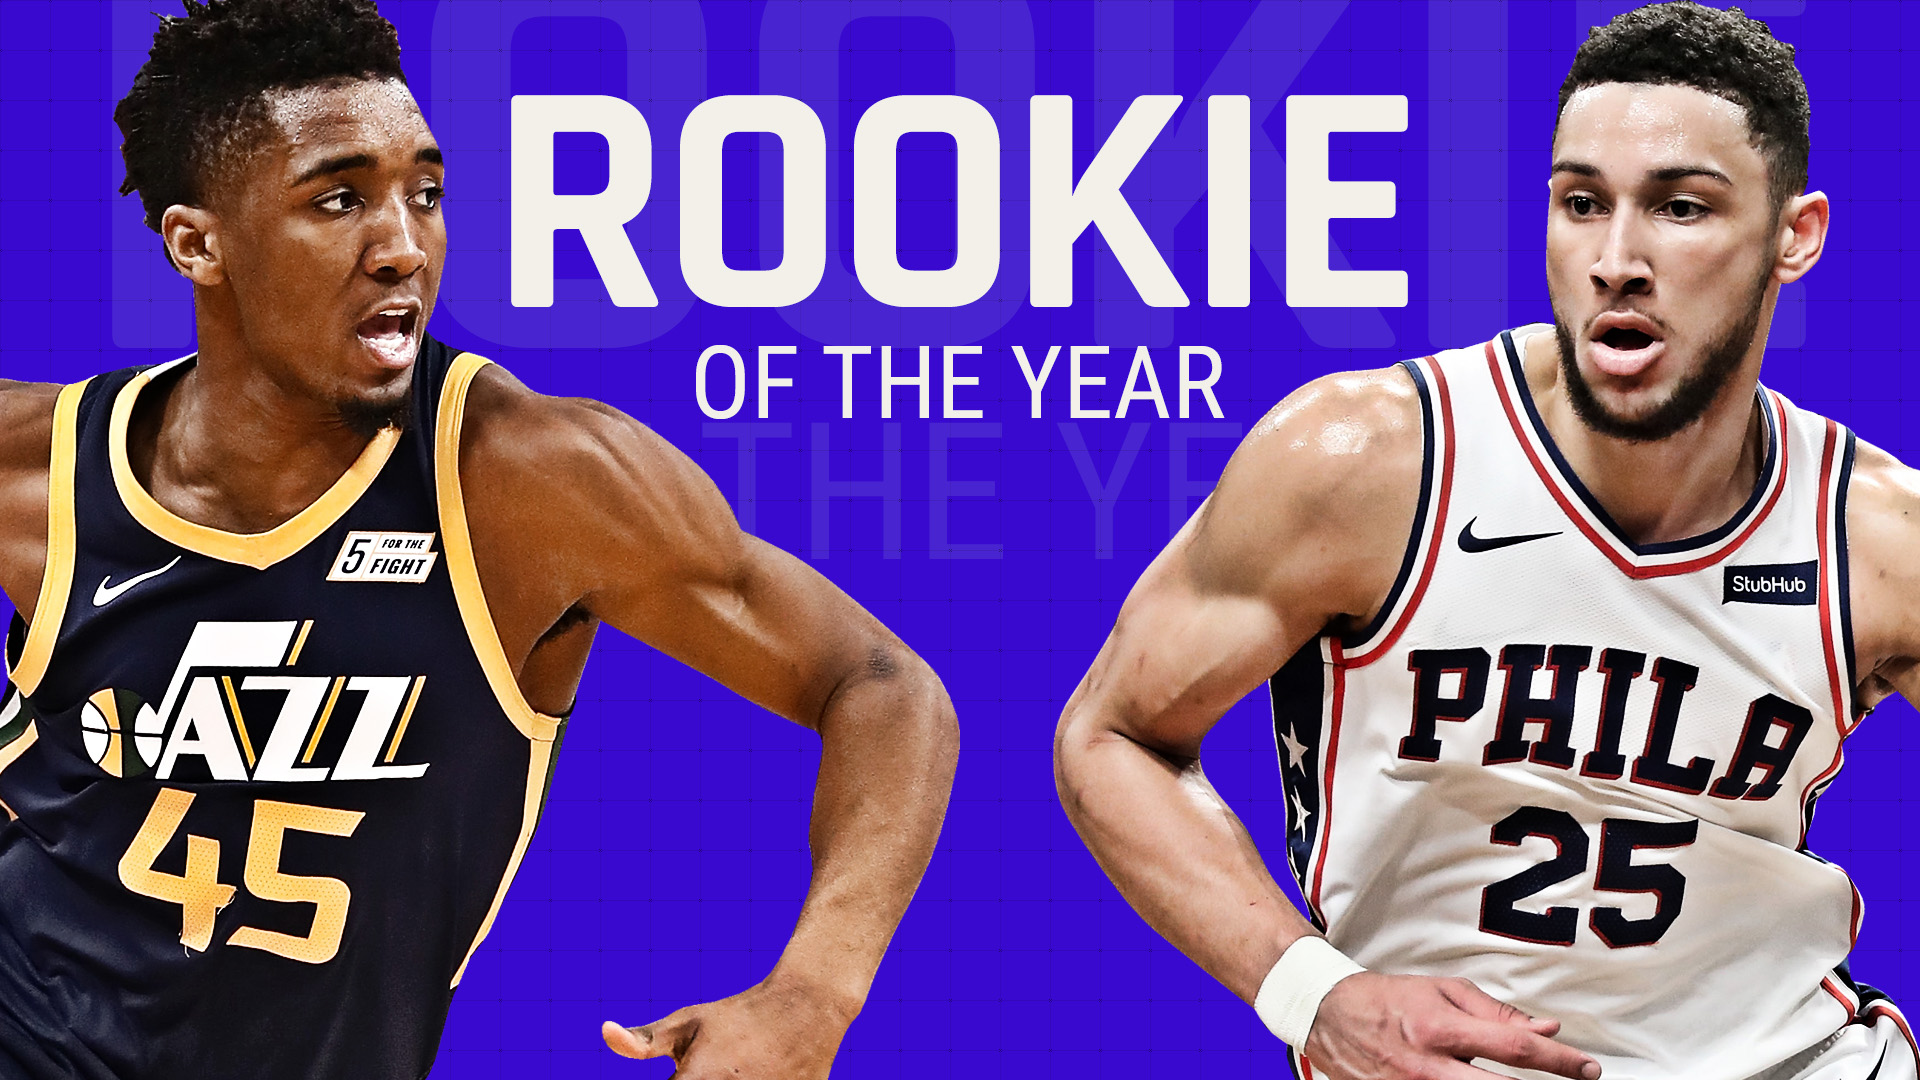 NBA Rookie of the Year race Battle between Ben Simmons, Donovan